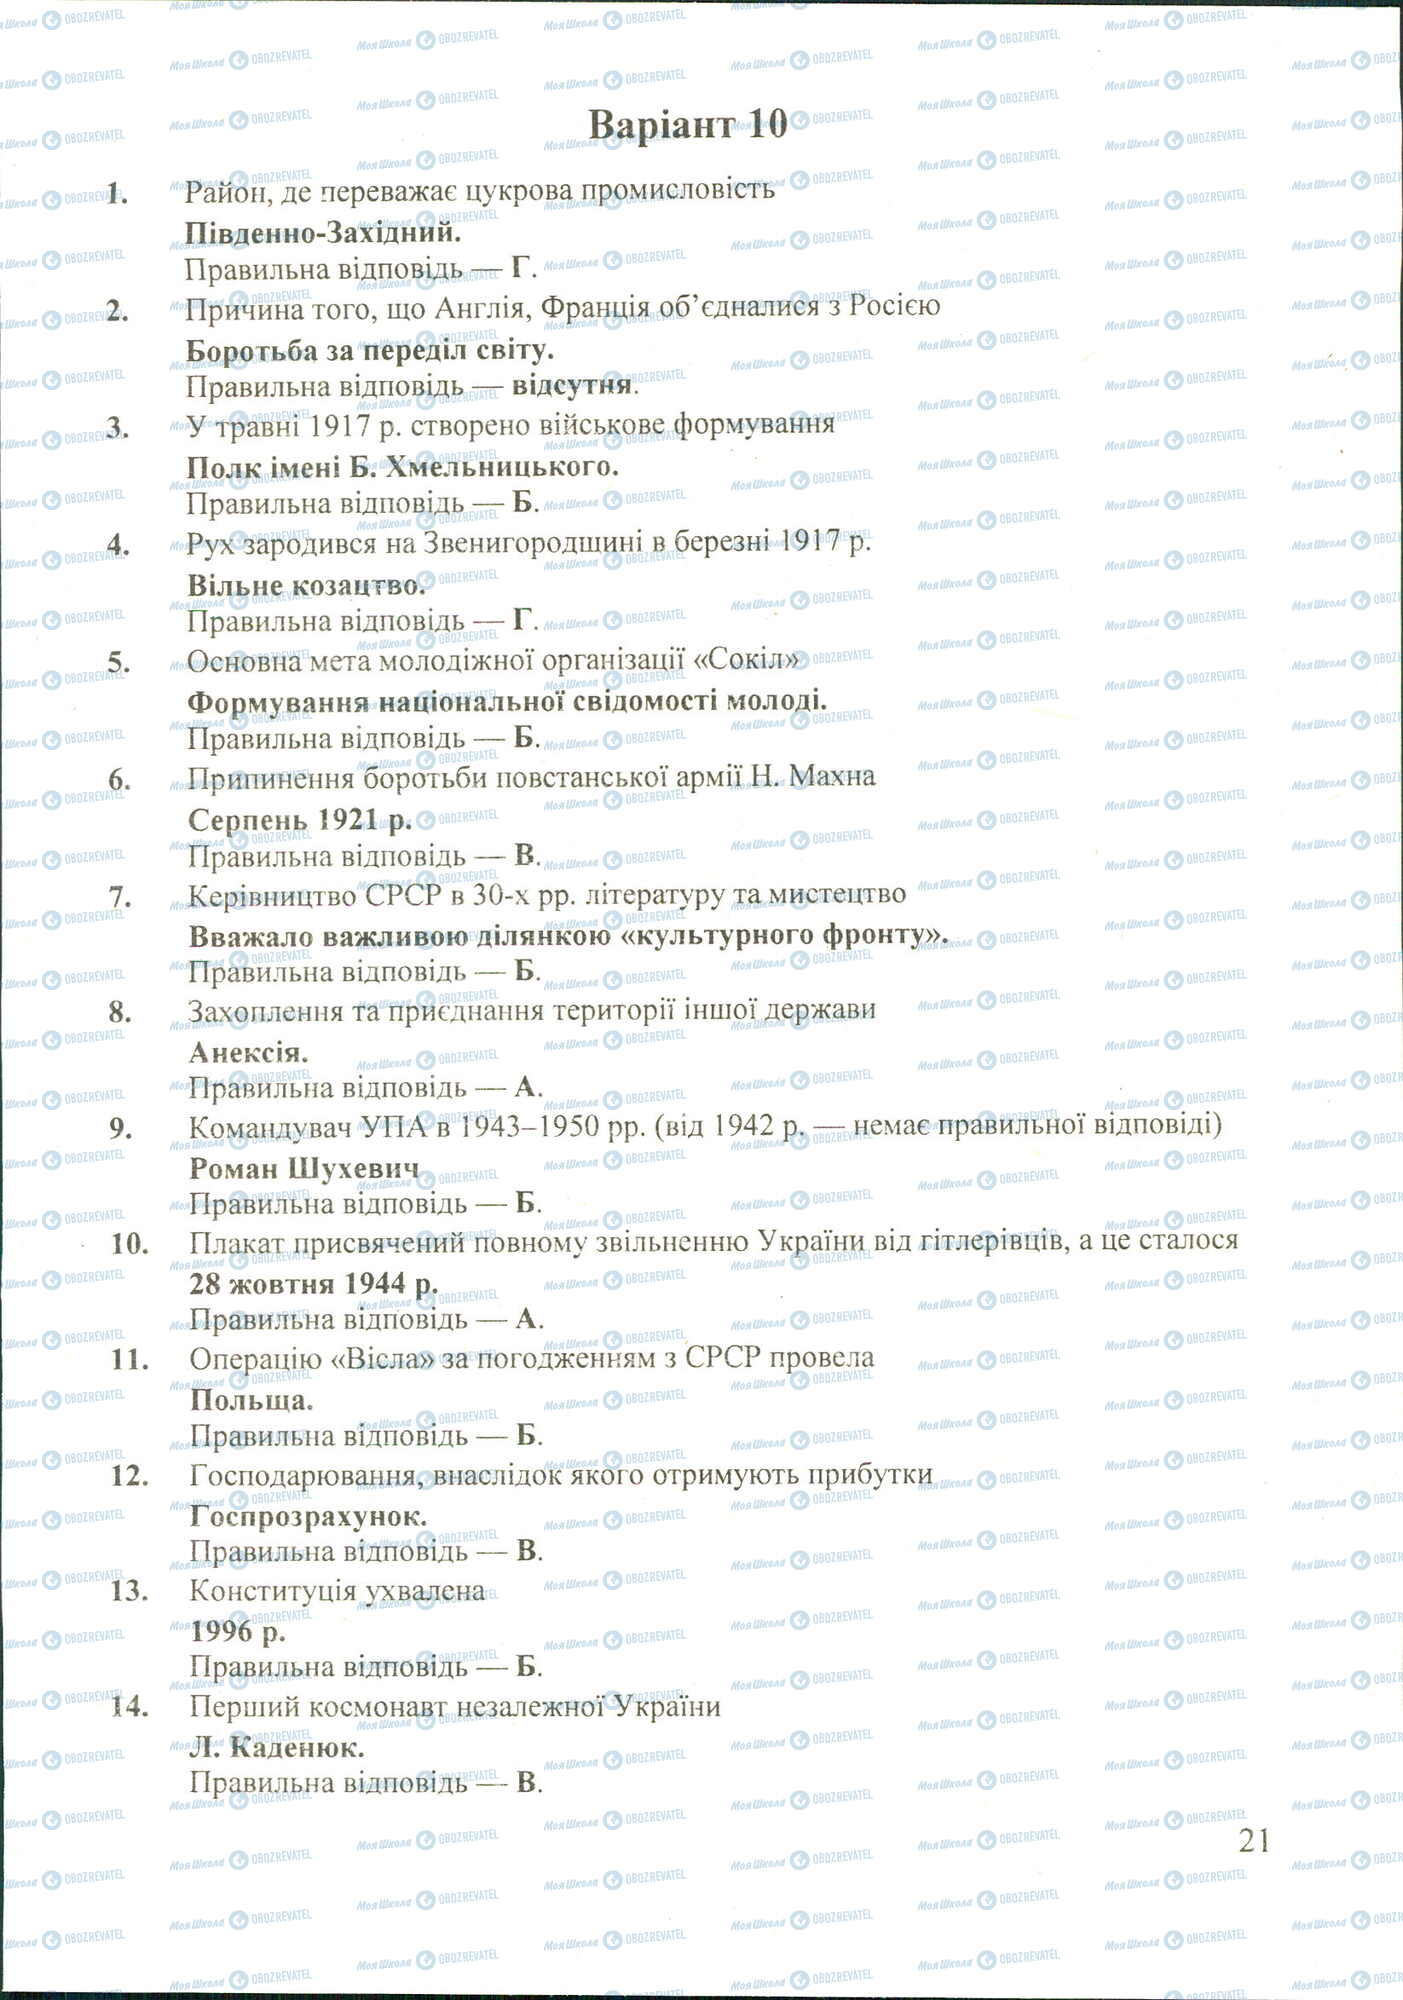 ДПА История Украины 11 класс страница image0000026A